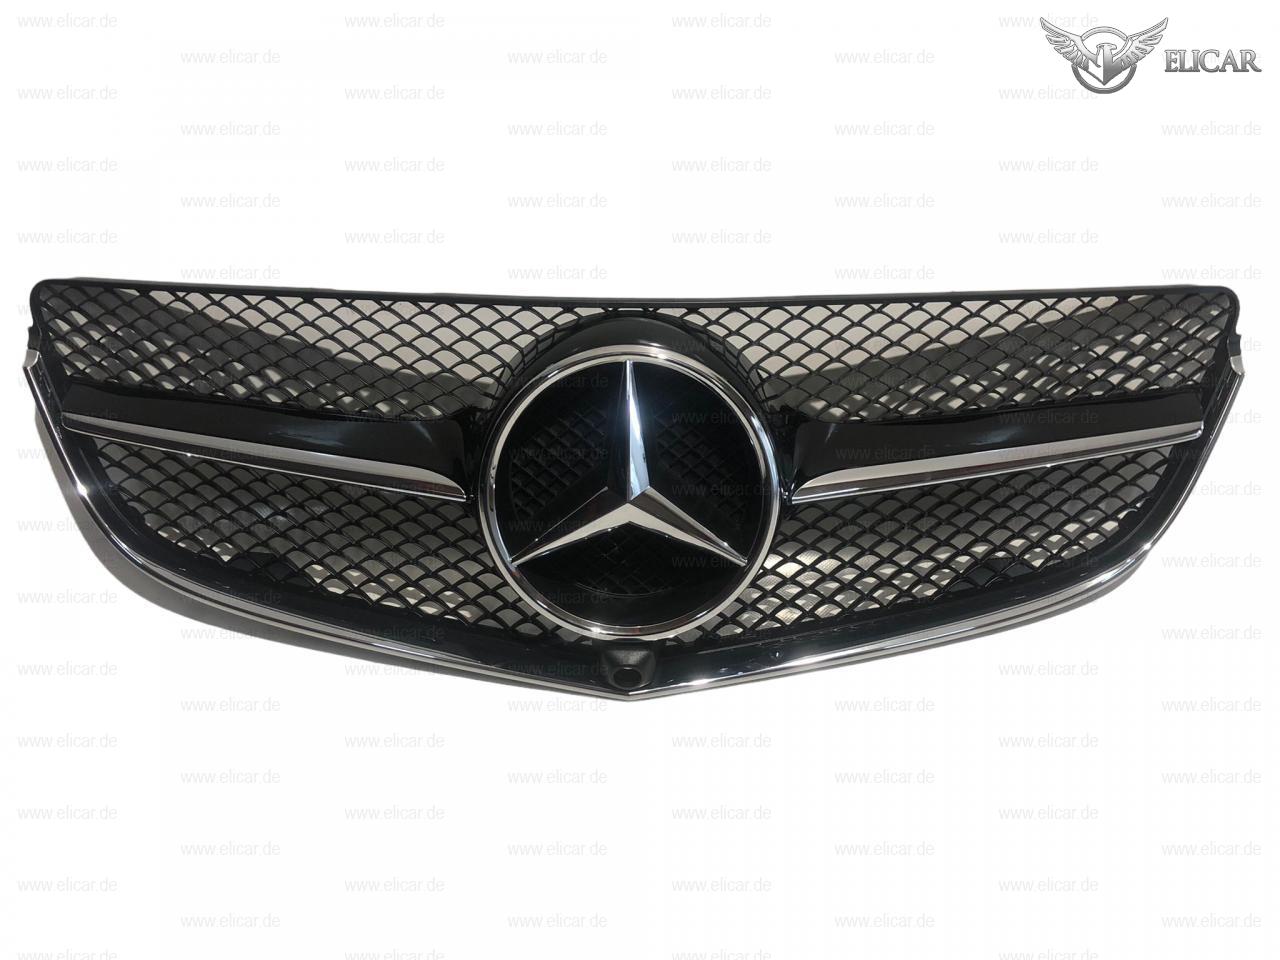 Kühlerverkleidung / Grill / inkl. Stern  für Mercedes-Benz 